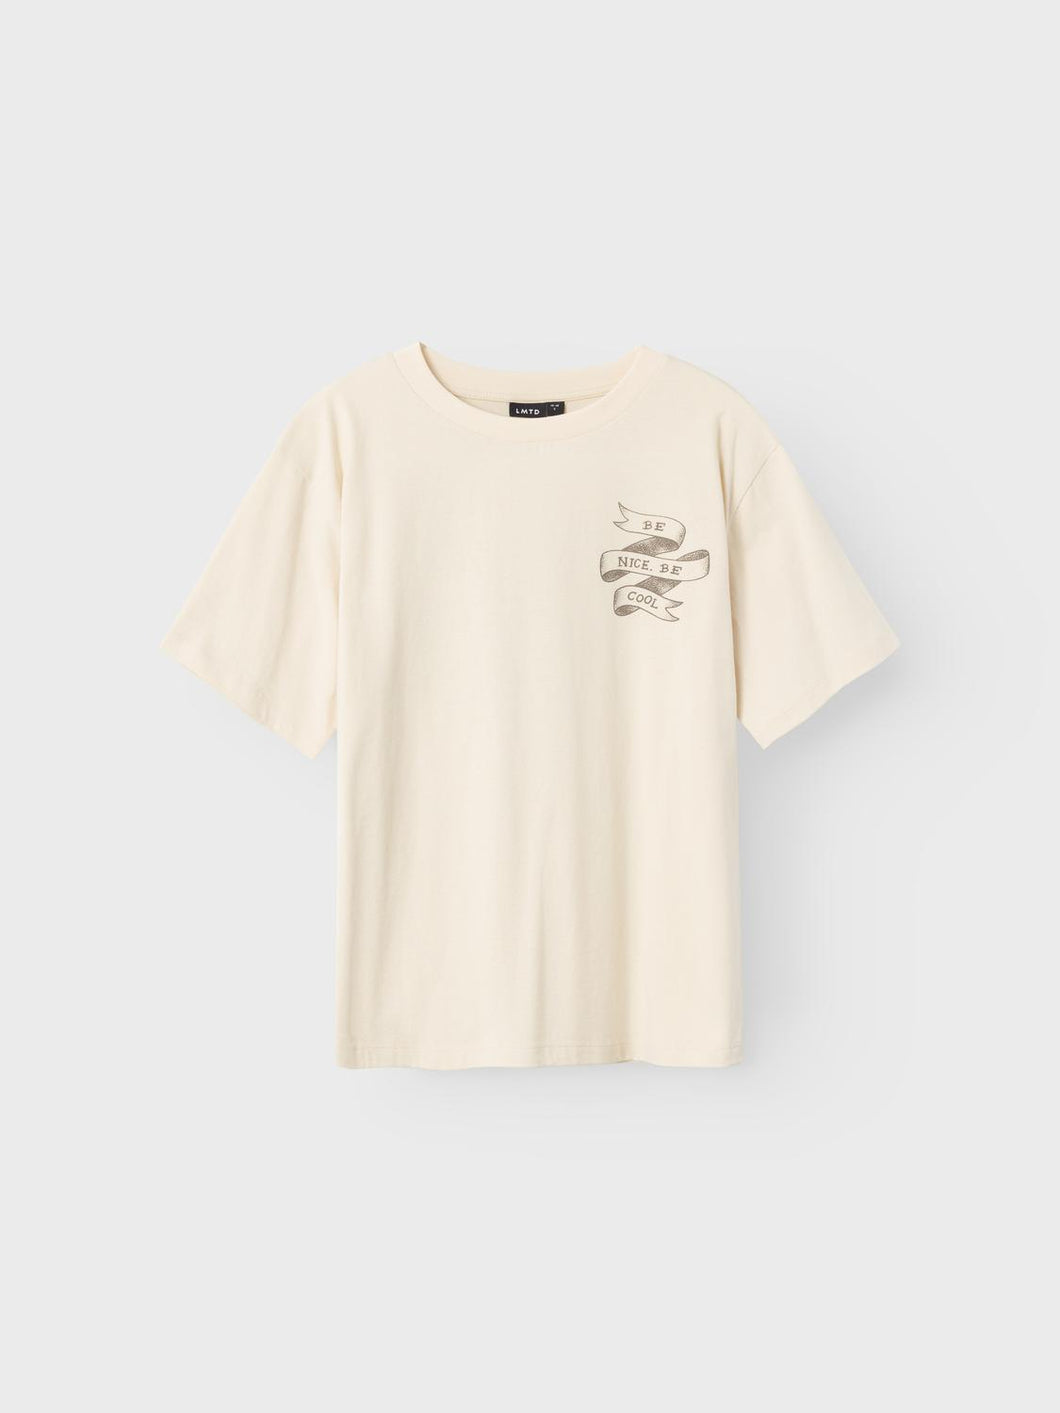 NLMTEAGLE T-Shirts & Tops - Turtledove